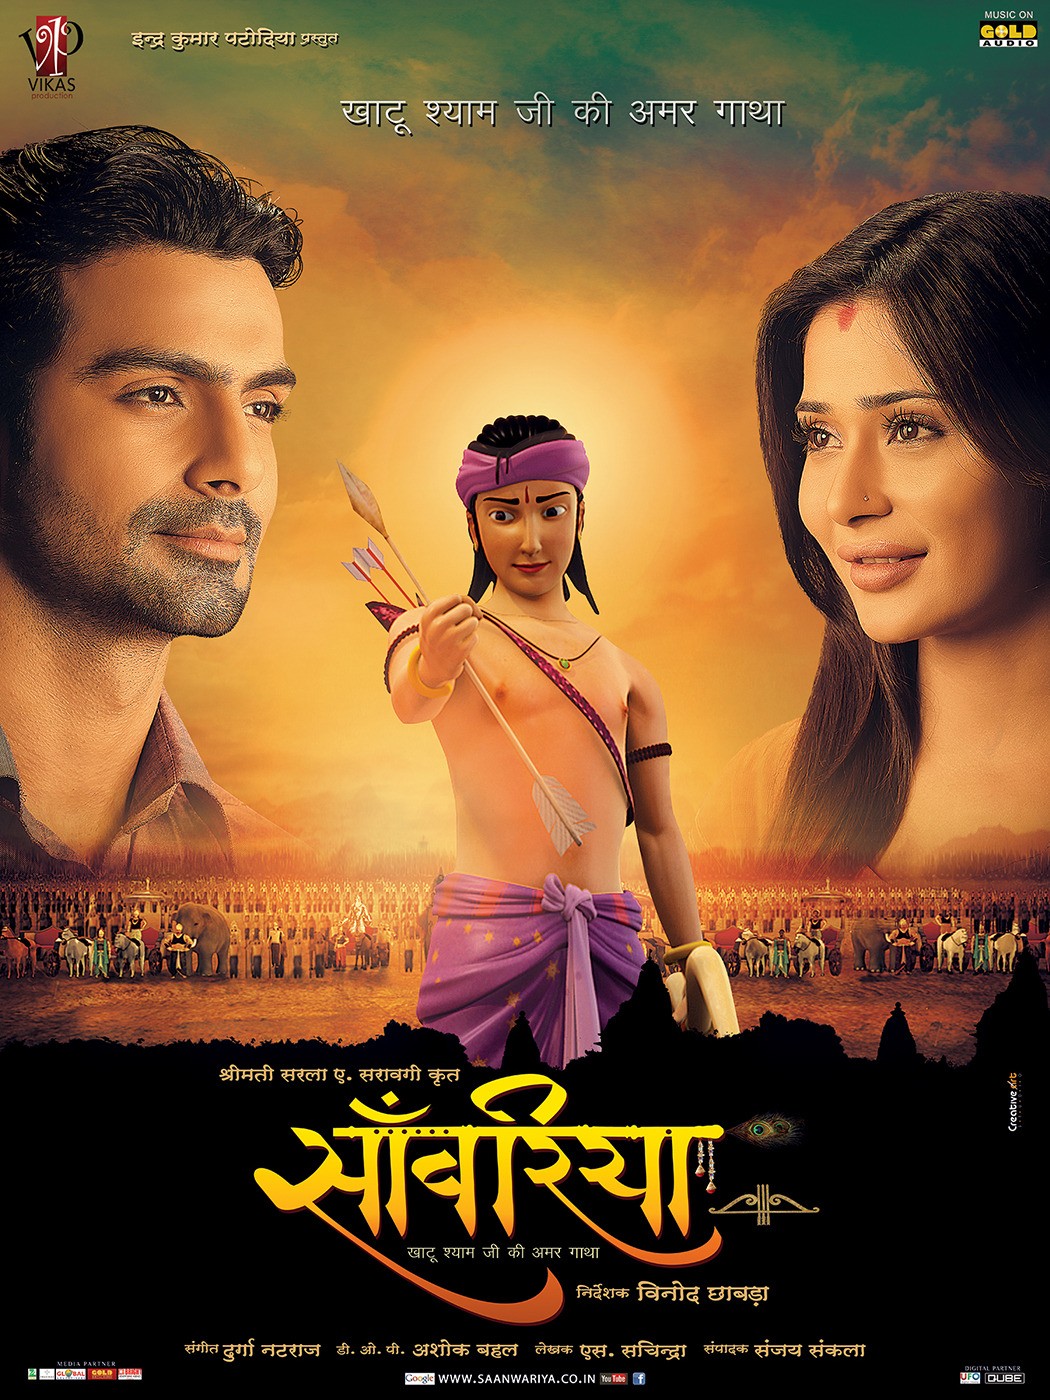 Extra Large Movie Poster Image for Saanwariya - Khatu Shyam Ji Ki Amar Gatha (#5 of 11)